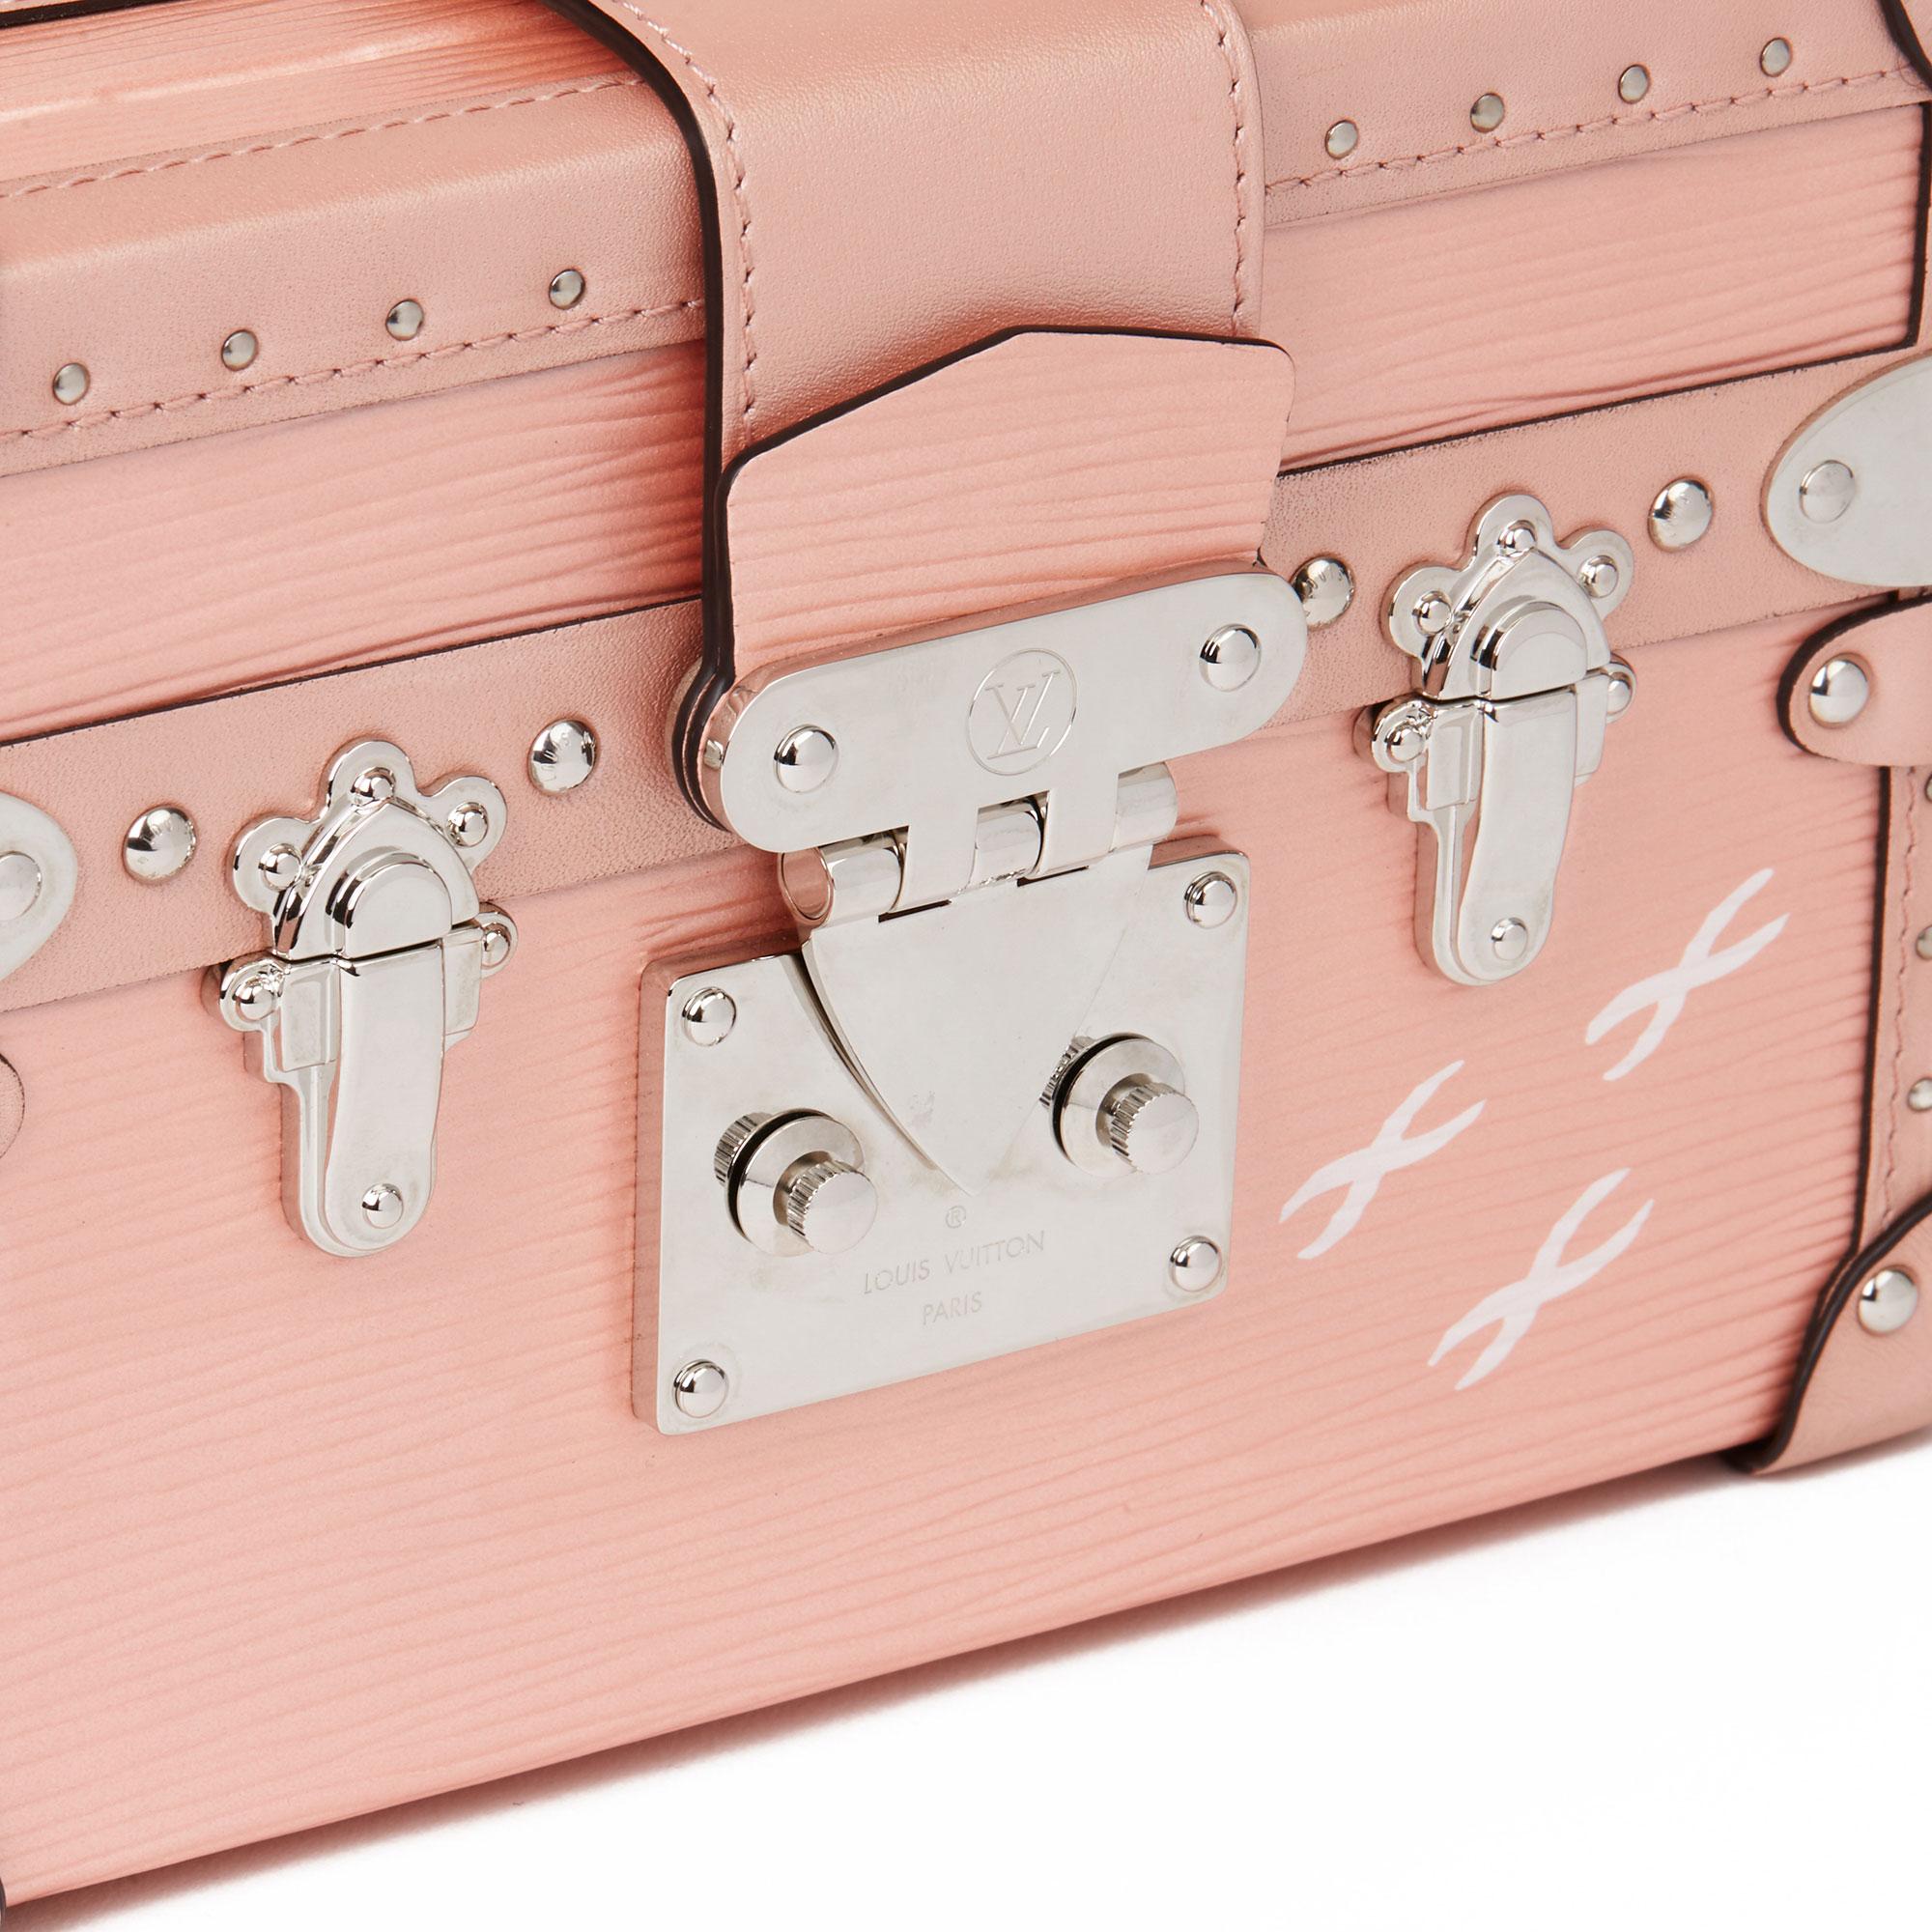 2015 Louis Vuitton Pink Metallic Epi Leather & Calfskin Petite Malle In Excellent Condition In Bishop's Stortford, Hertfordshire